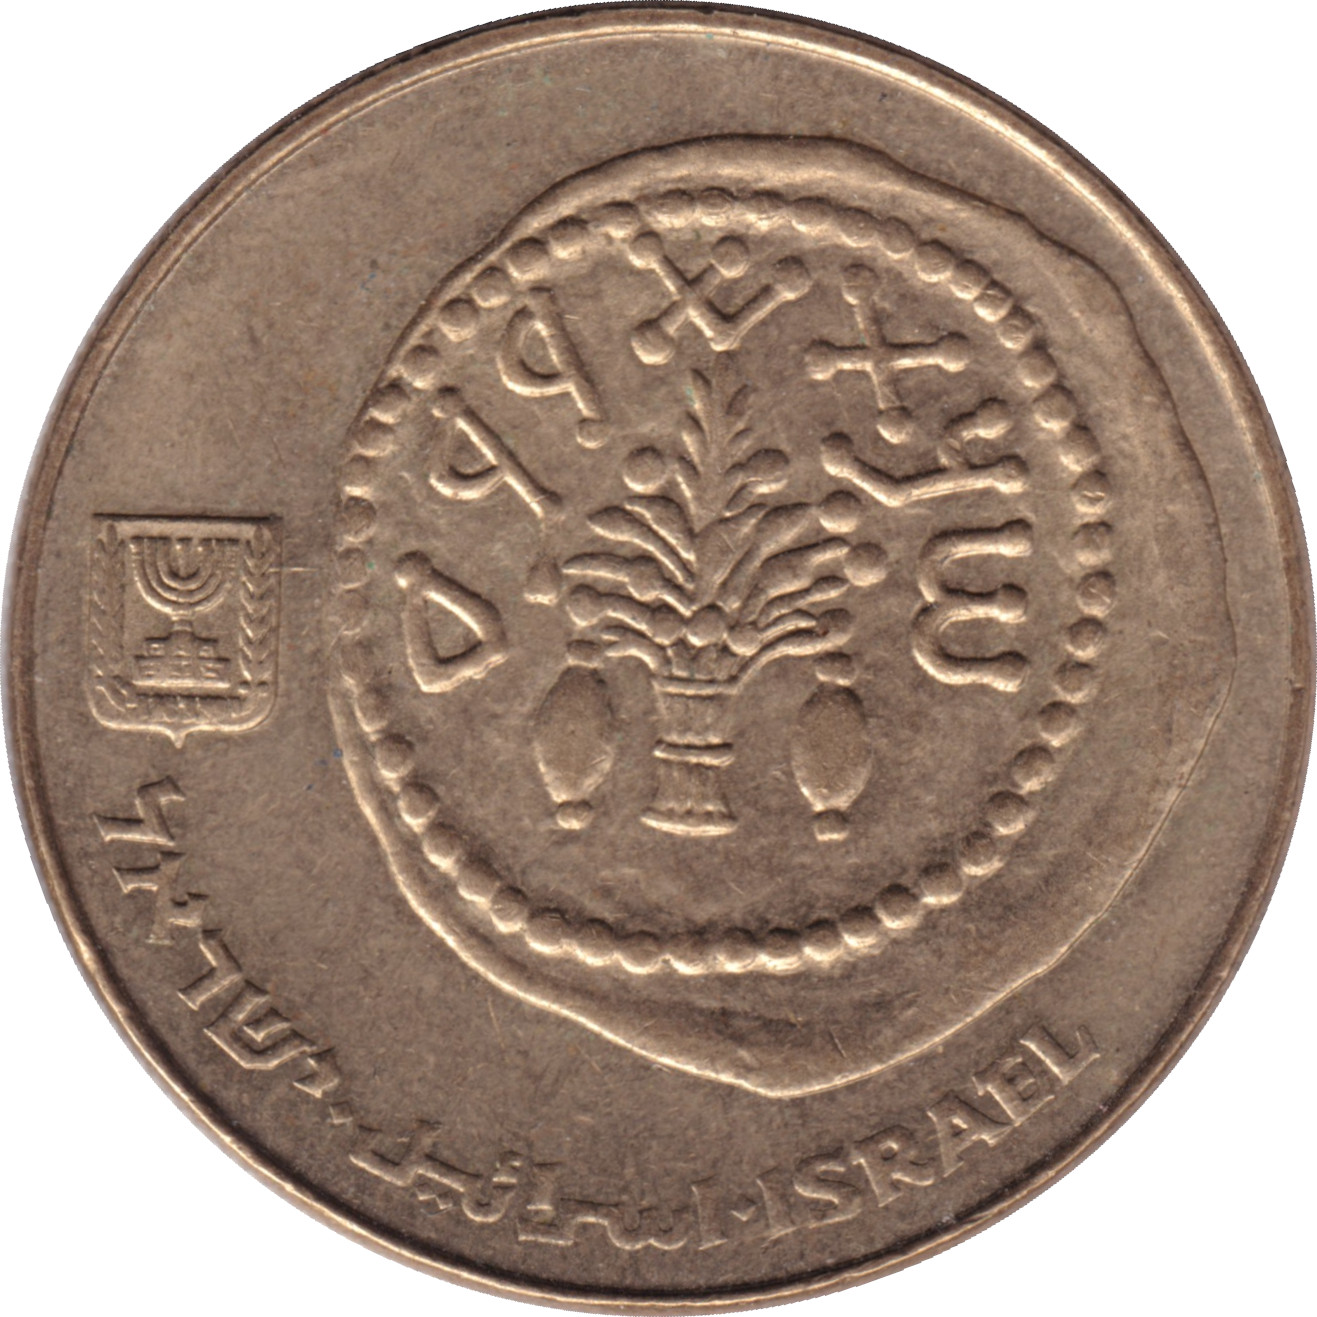 50 sheqalim - Ancienne monnaie